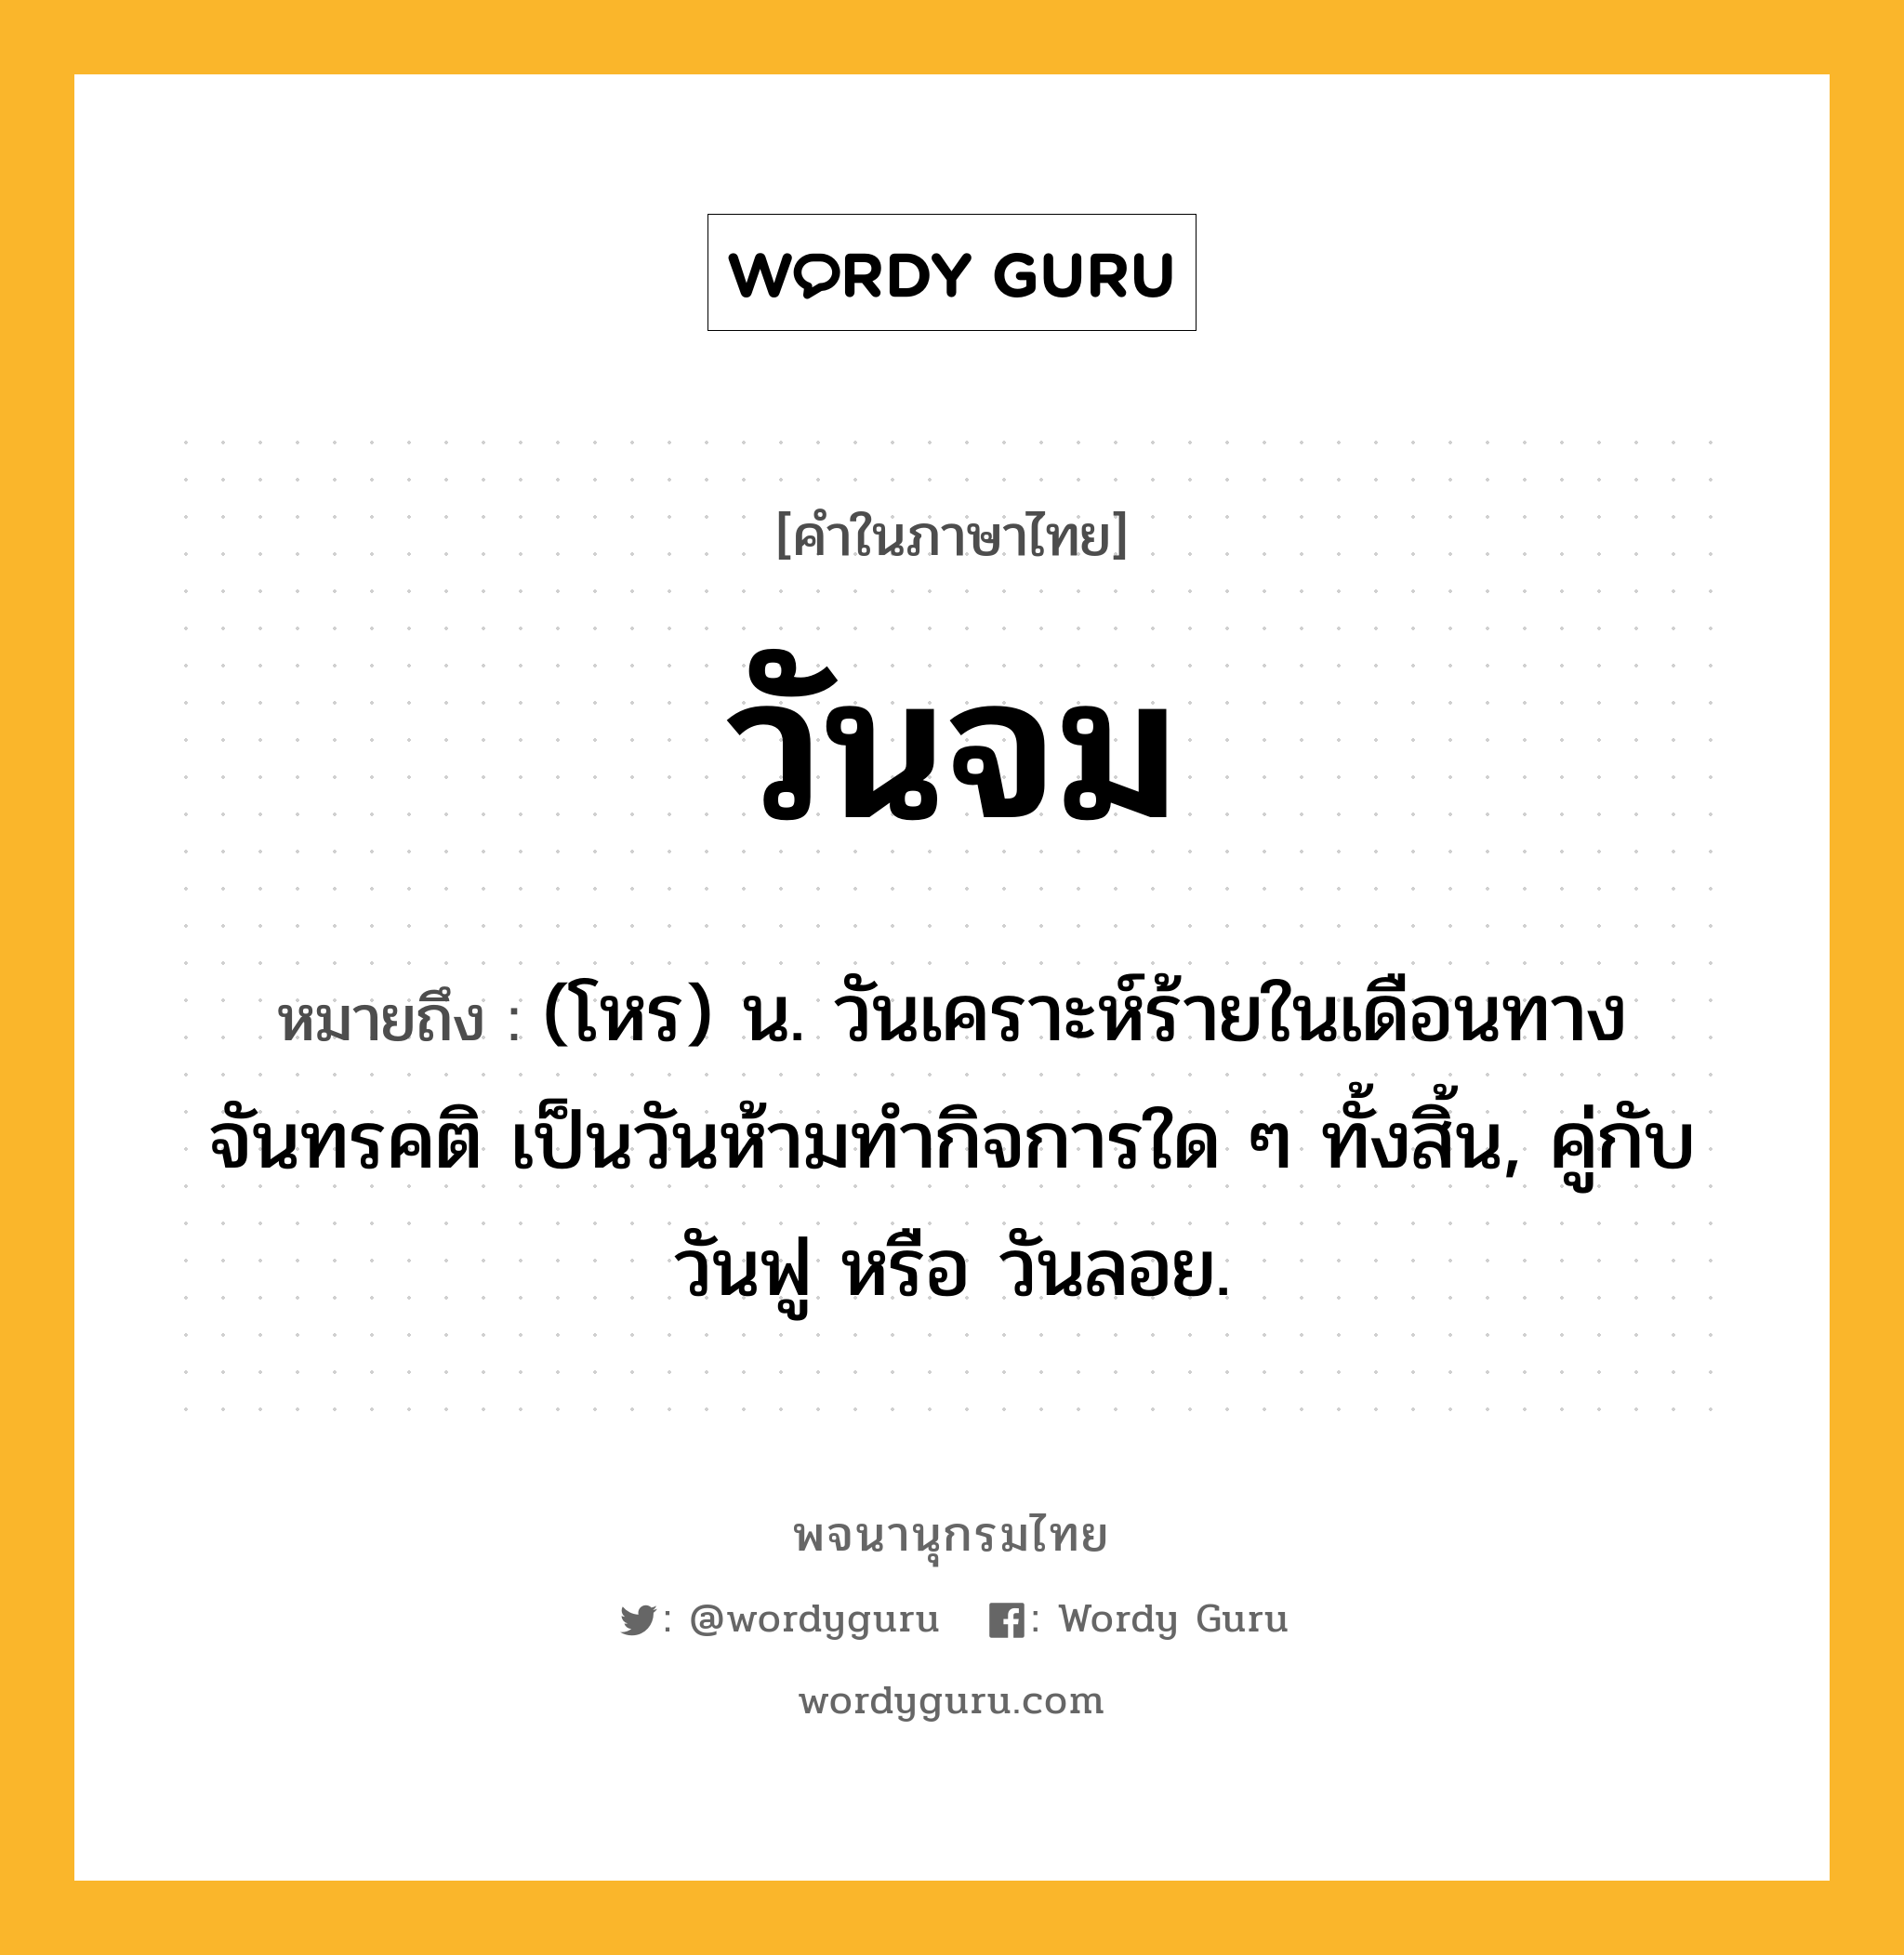 วันจม ความหมาย หมายถึงอะไร?, คำในภาษาไทย วันจม หมายถึง (โหร) น. วันเคราะห์ร้ายในเดือนทางจันทรคติ เป็นวันห้ามทํากิจการใด ๆ ทั้งสิ้น, คู่กับ วันฟู หรือ วันลอย.